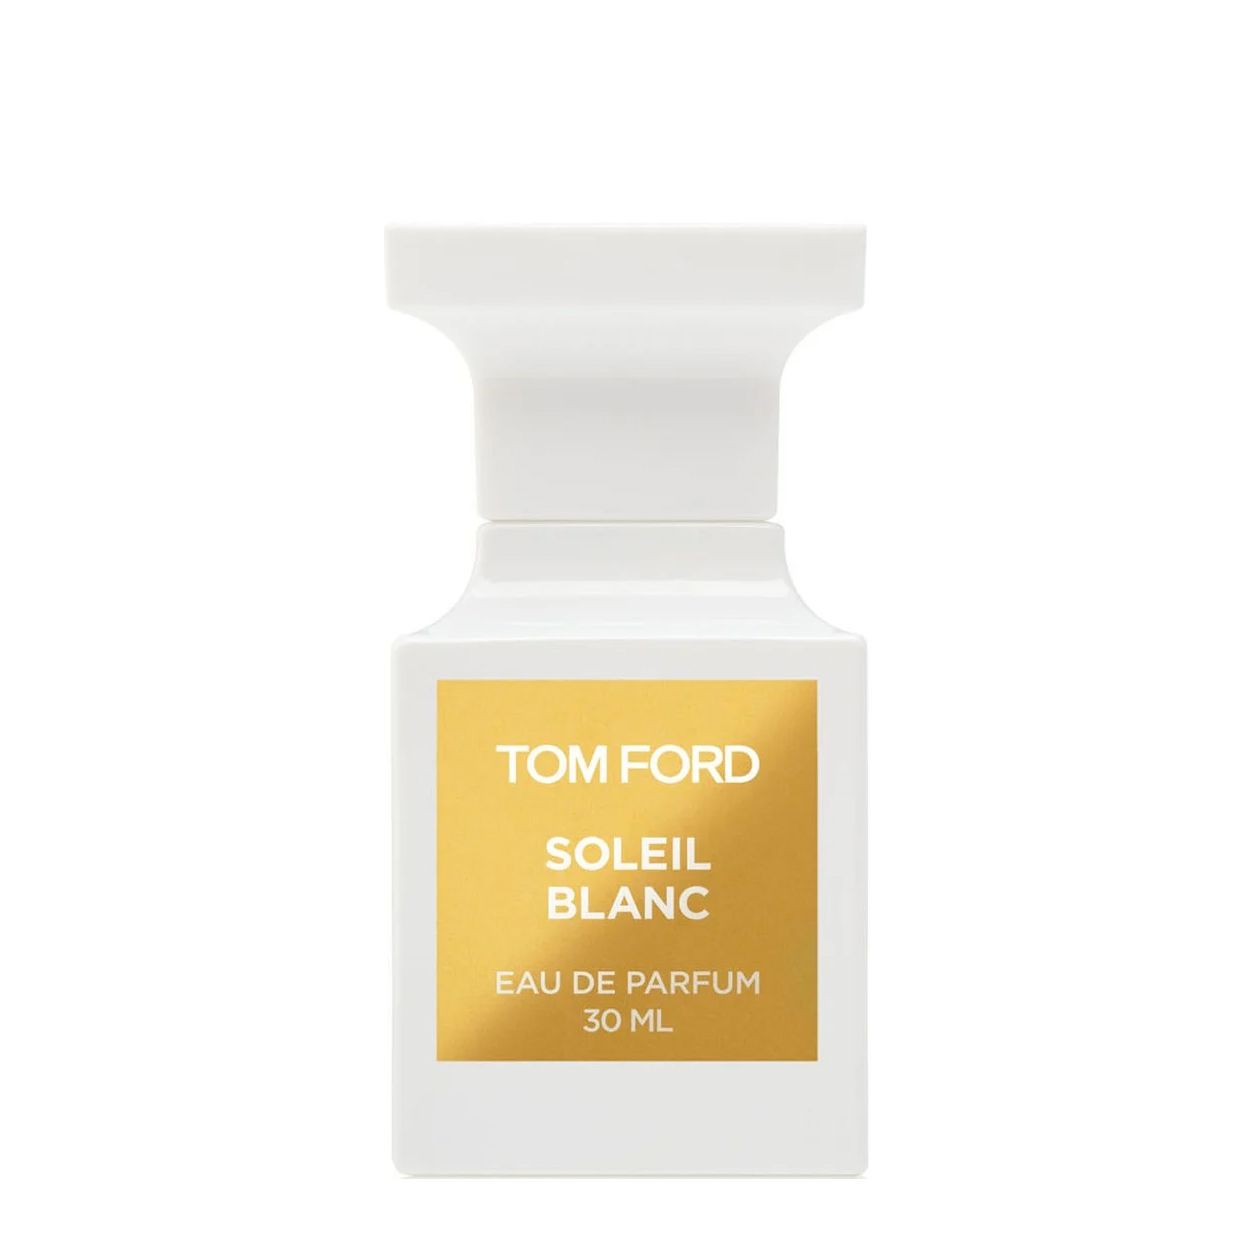 Вода парфюмерная Tom Ford Soleil Blanc, унисекс, 30 мл soleil blanc